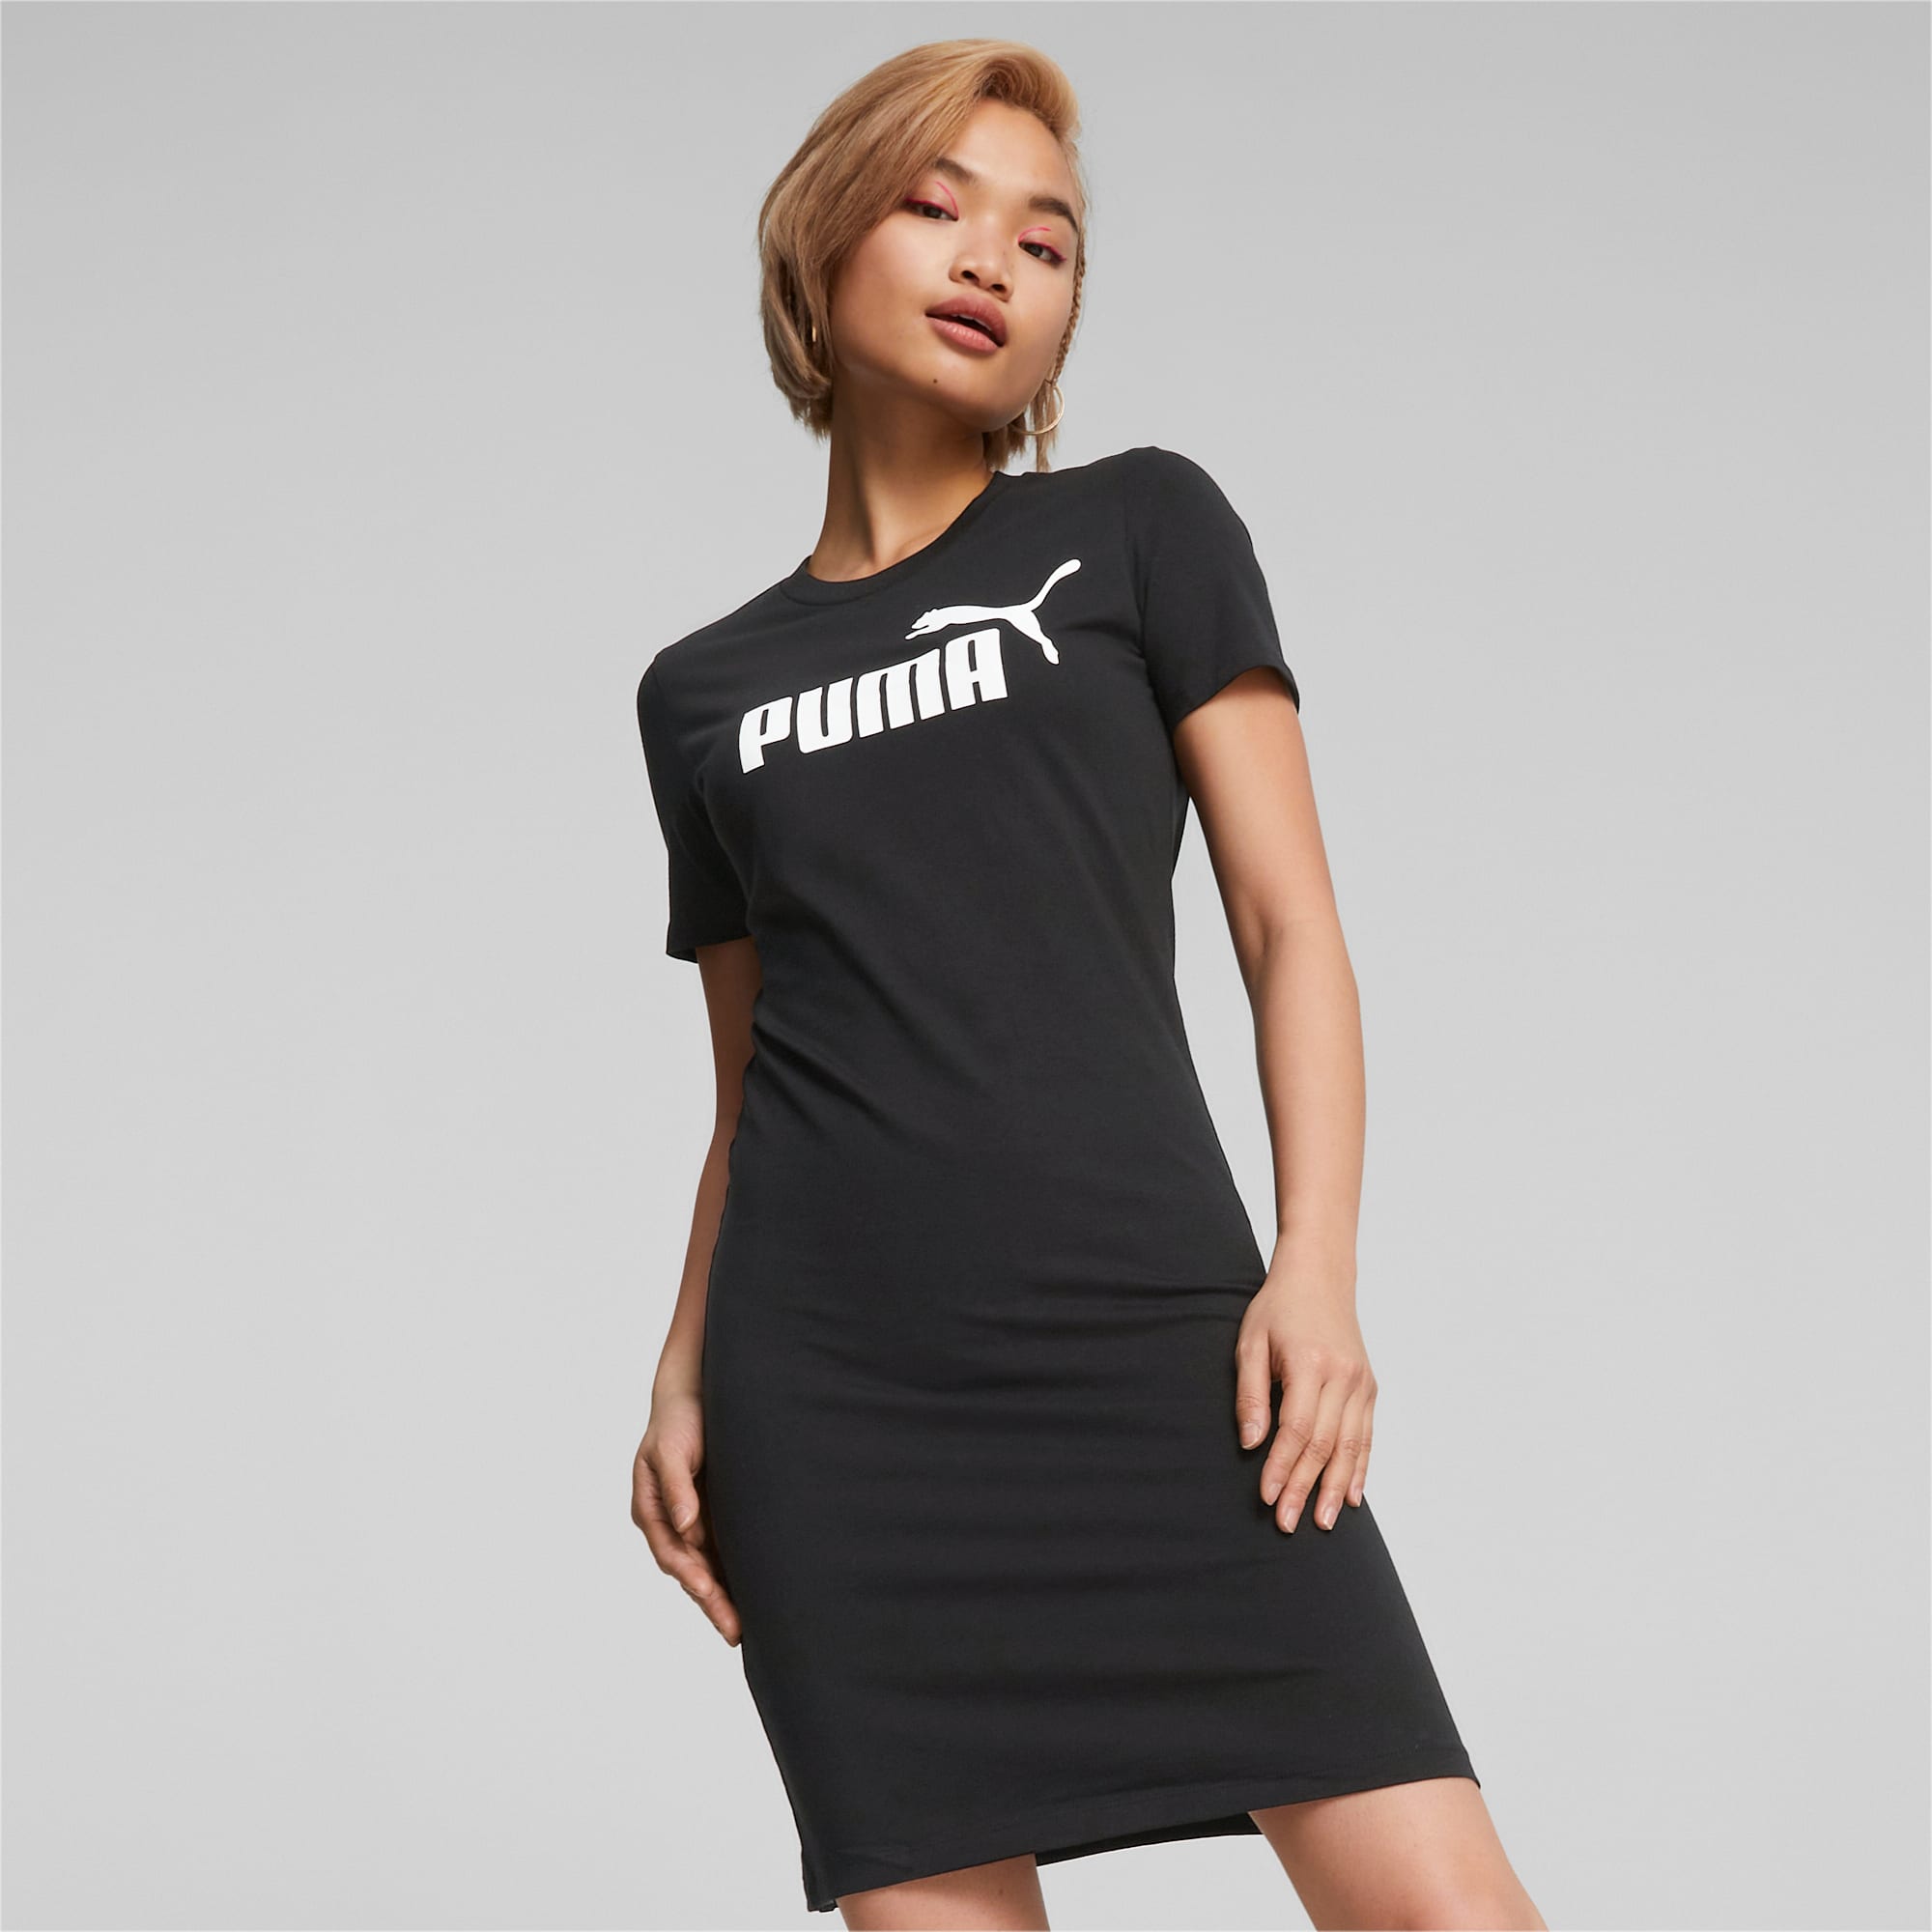 Puma Women's Dresses - online store on PRM